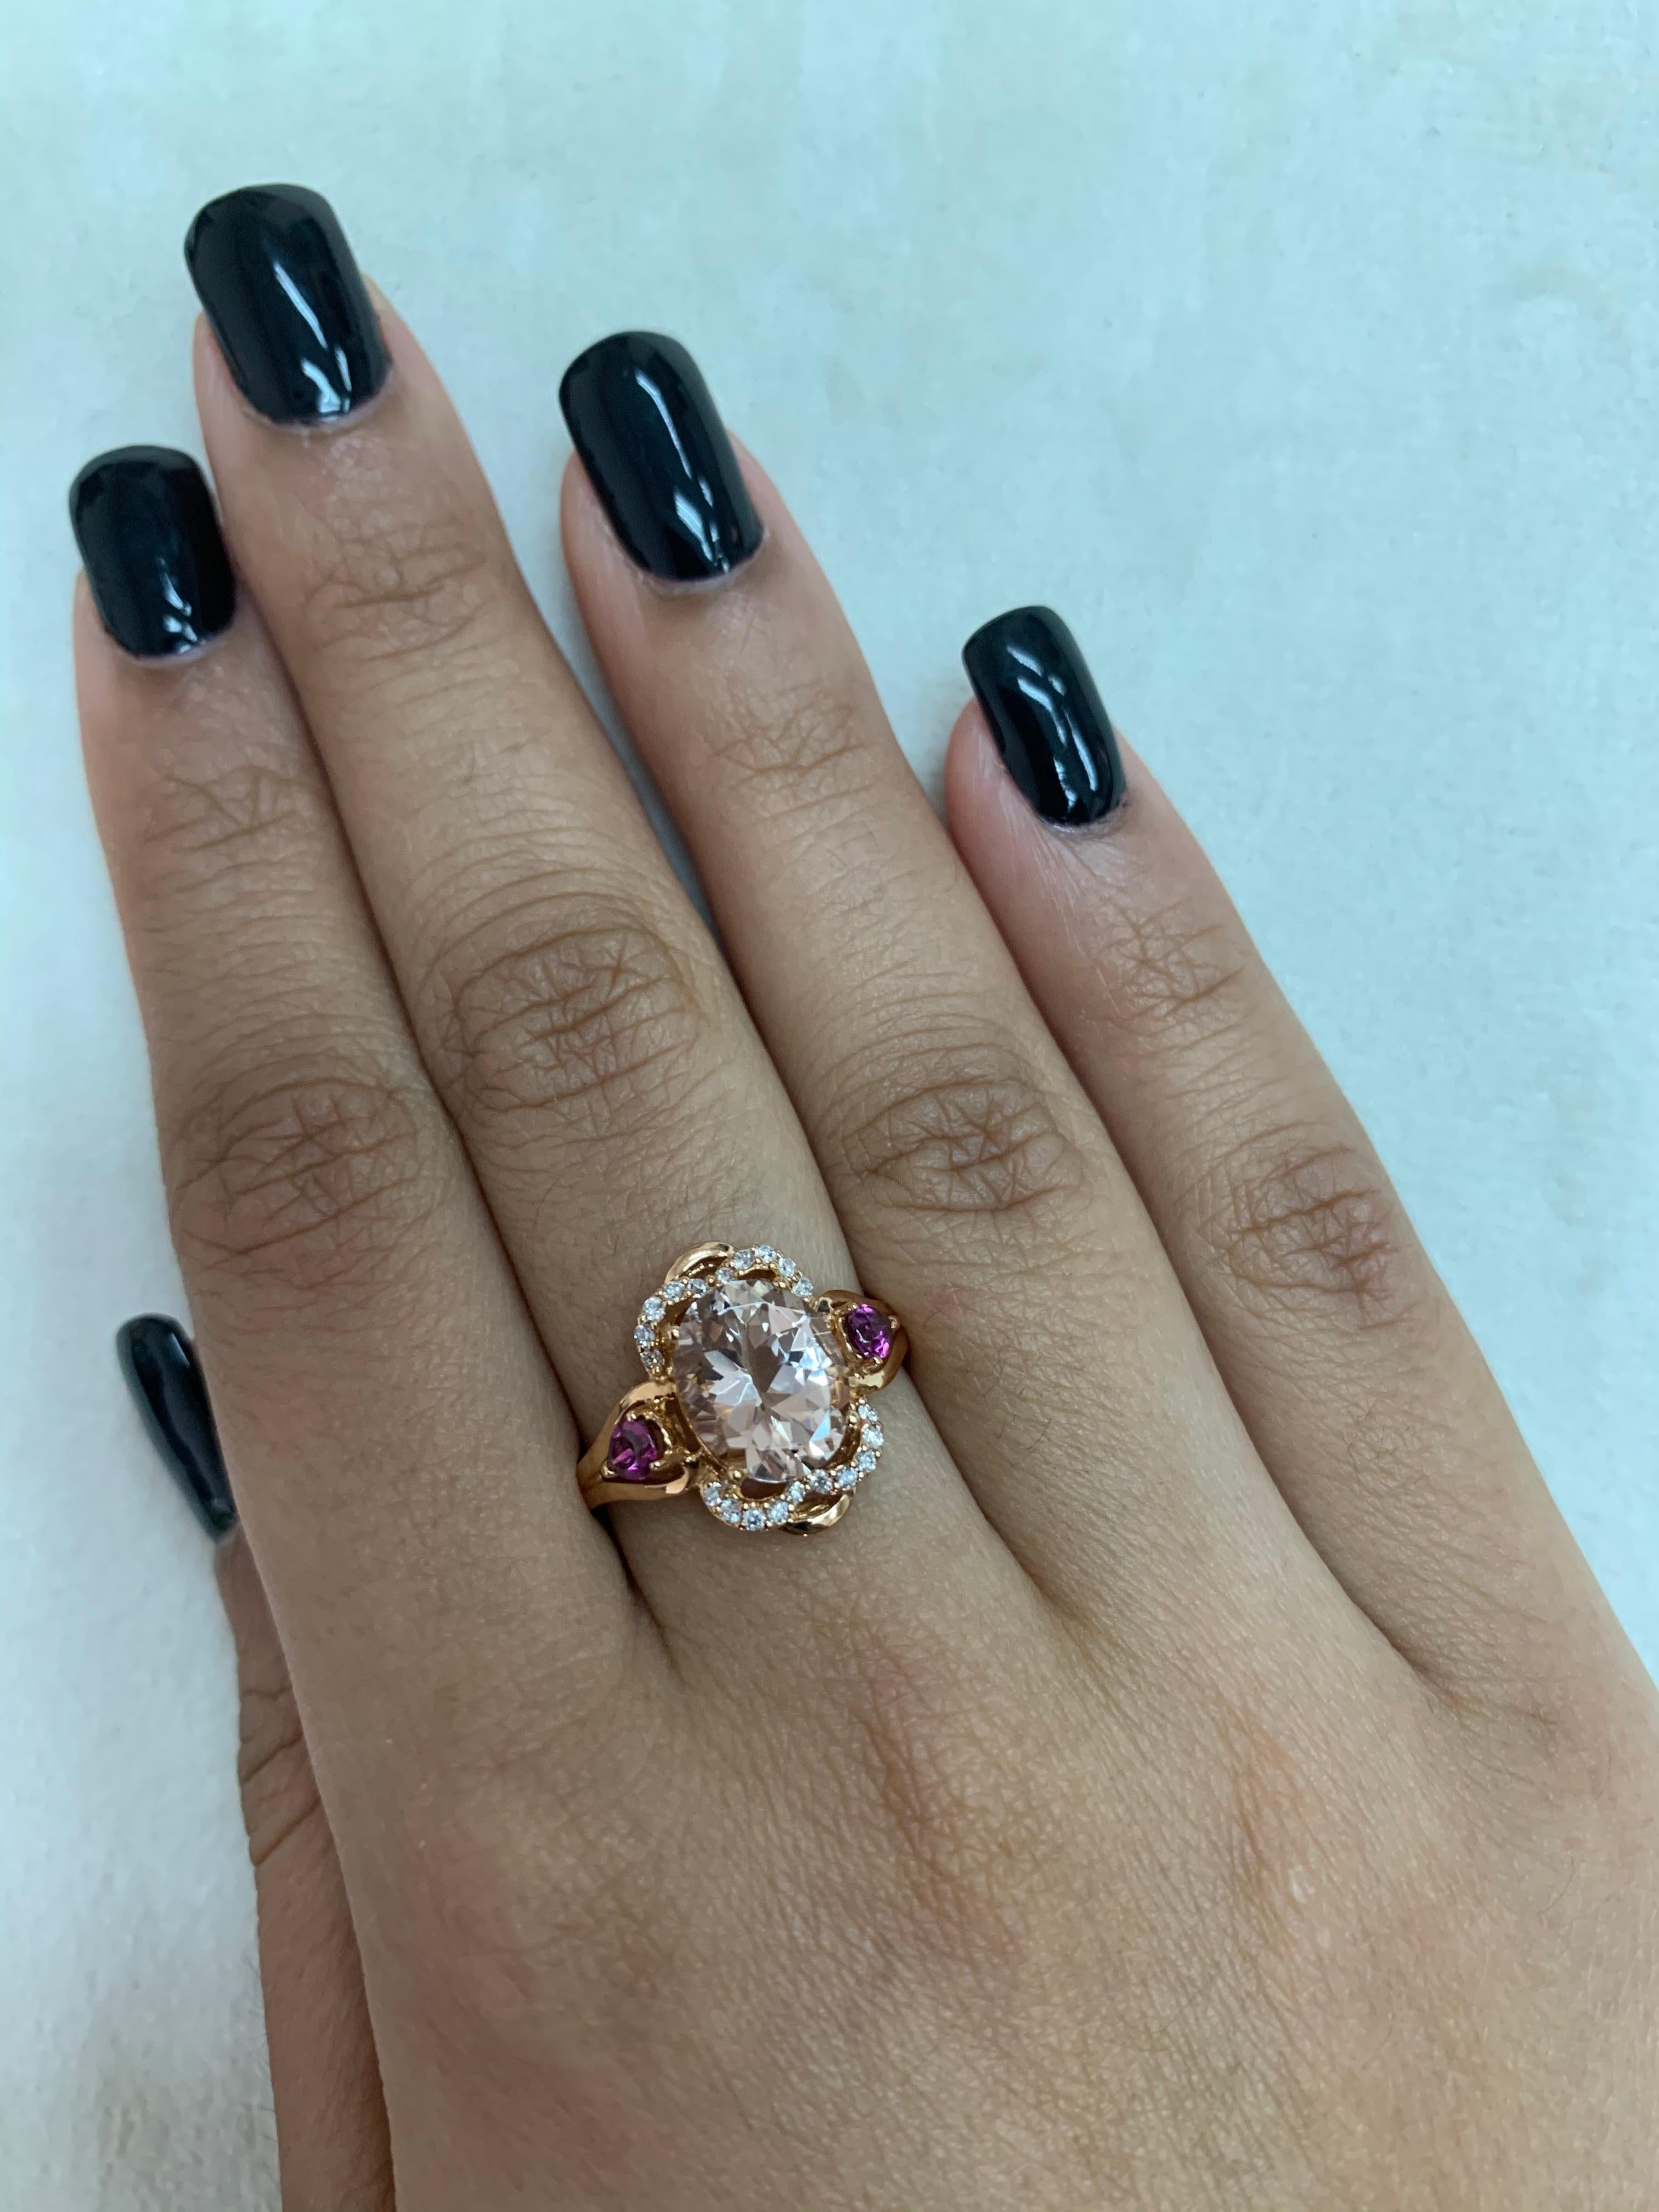 Diese Kollektion bietet eine Reihe von prächtigen Morganiten! Die mit Diamanten besetzten Ringe sind aus Roségold gefertigt und wirken klassisch und elegant. 

Klassischer Morganit-Ring aus 18 Karat Roségold mit Diamanten. 

Morganit: 2.35 Karat in